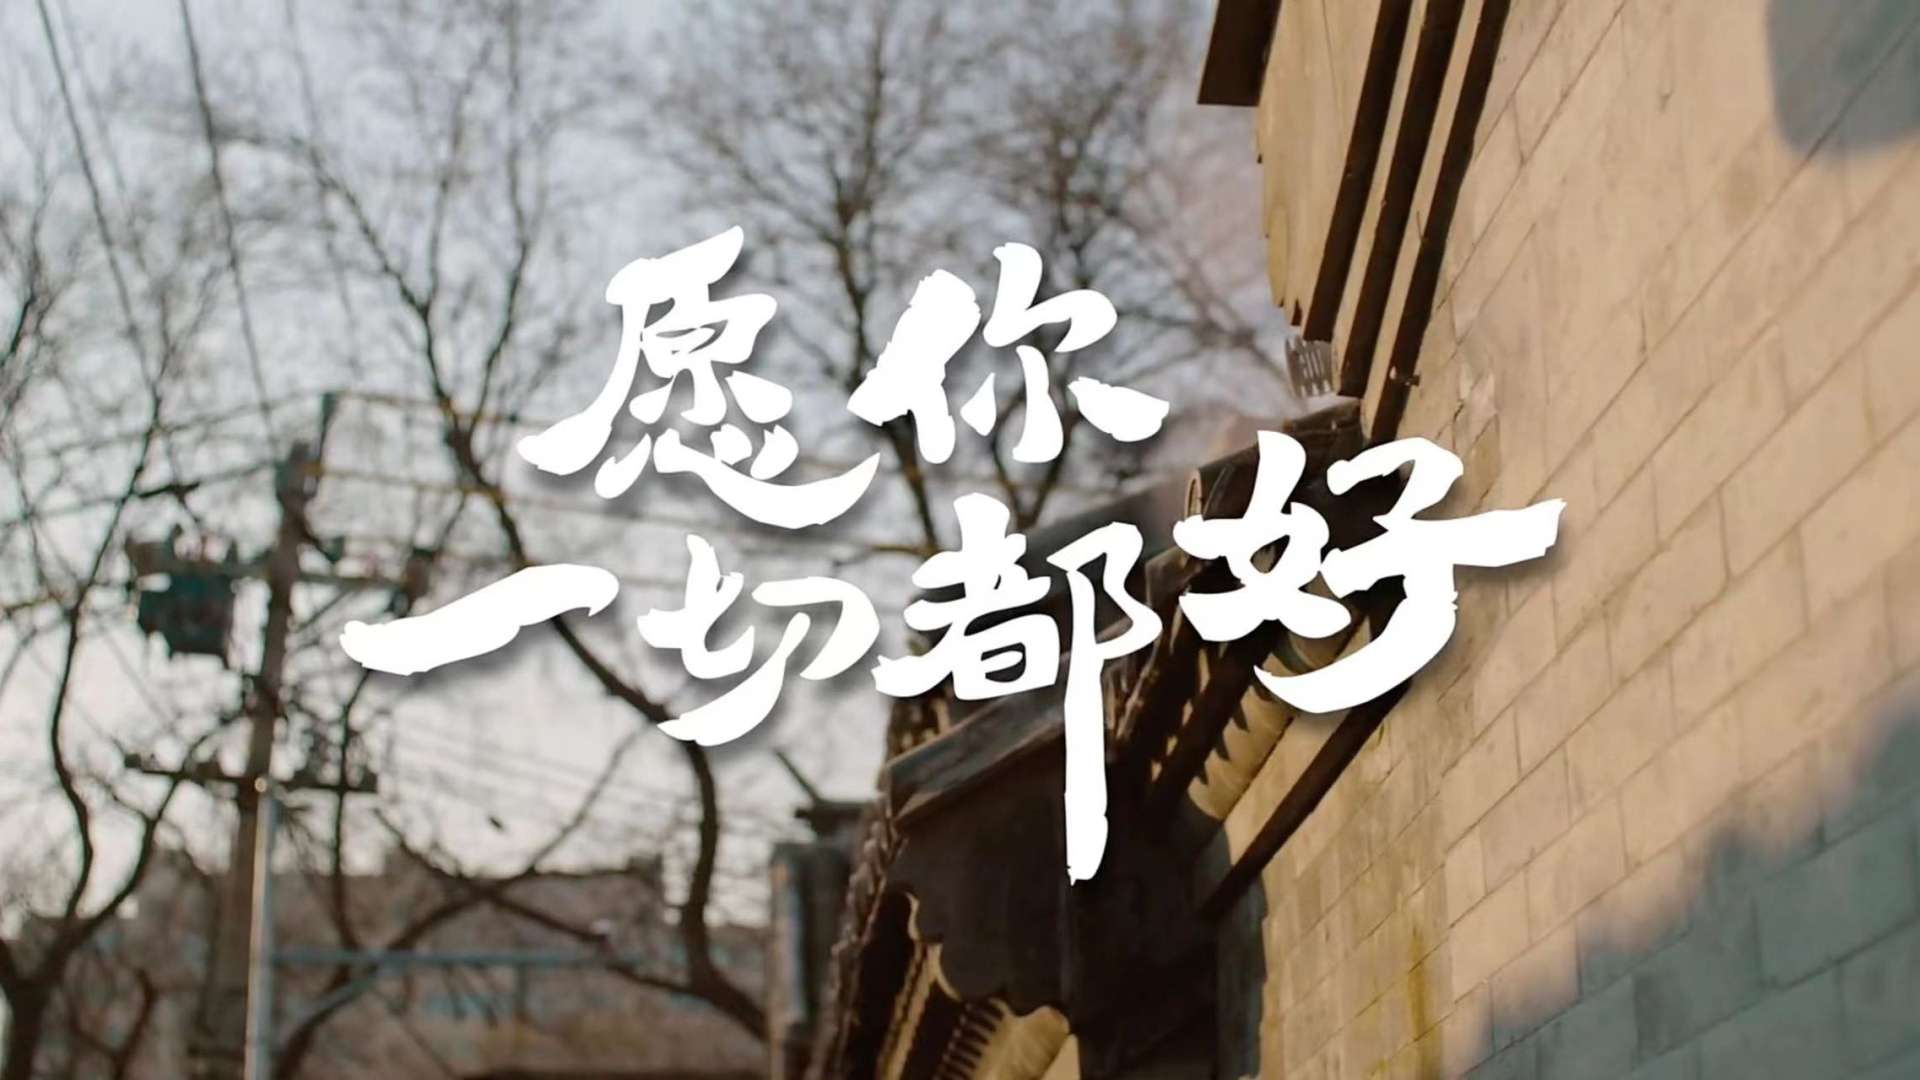 京东年货节宣传视频《愿你一切都好》